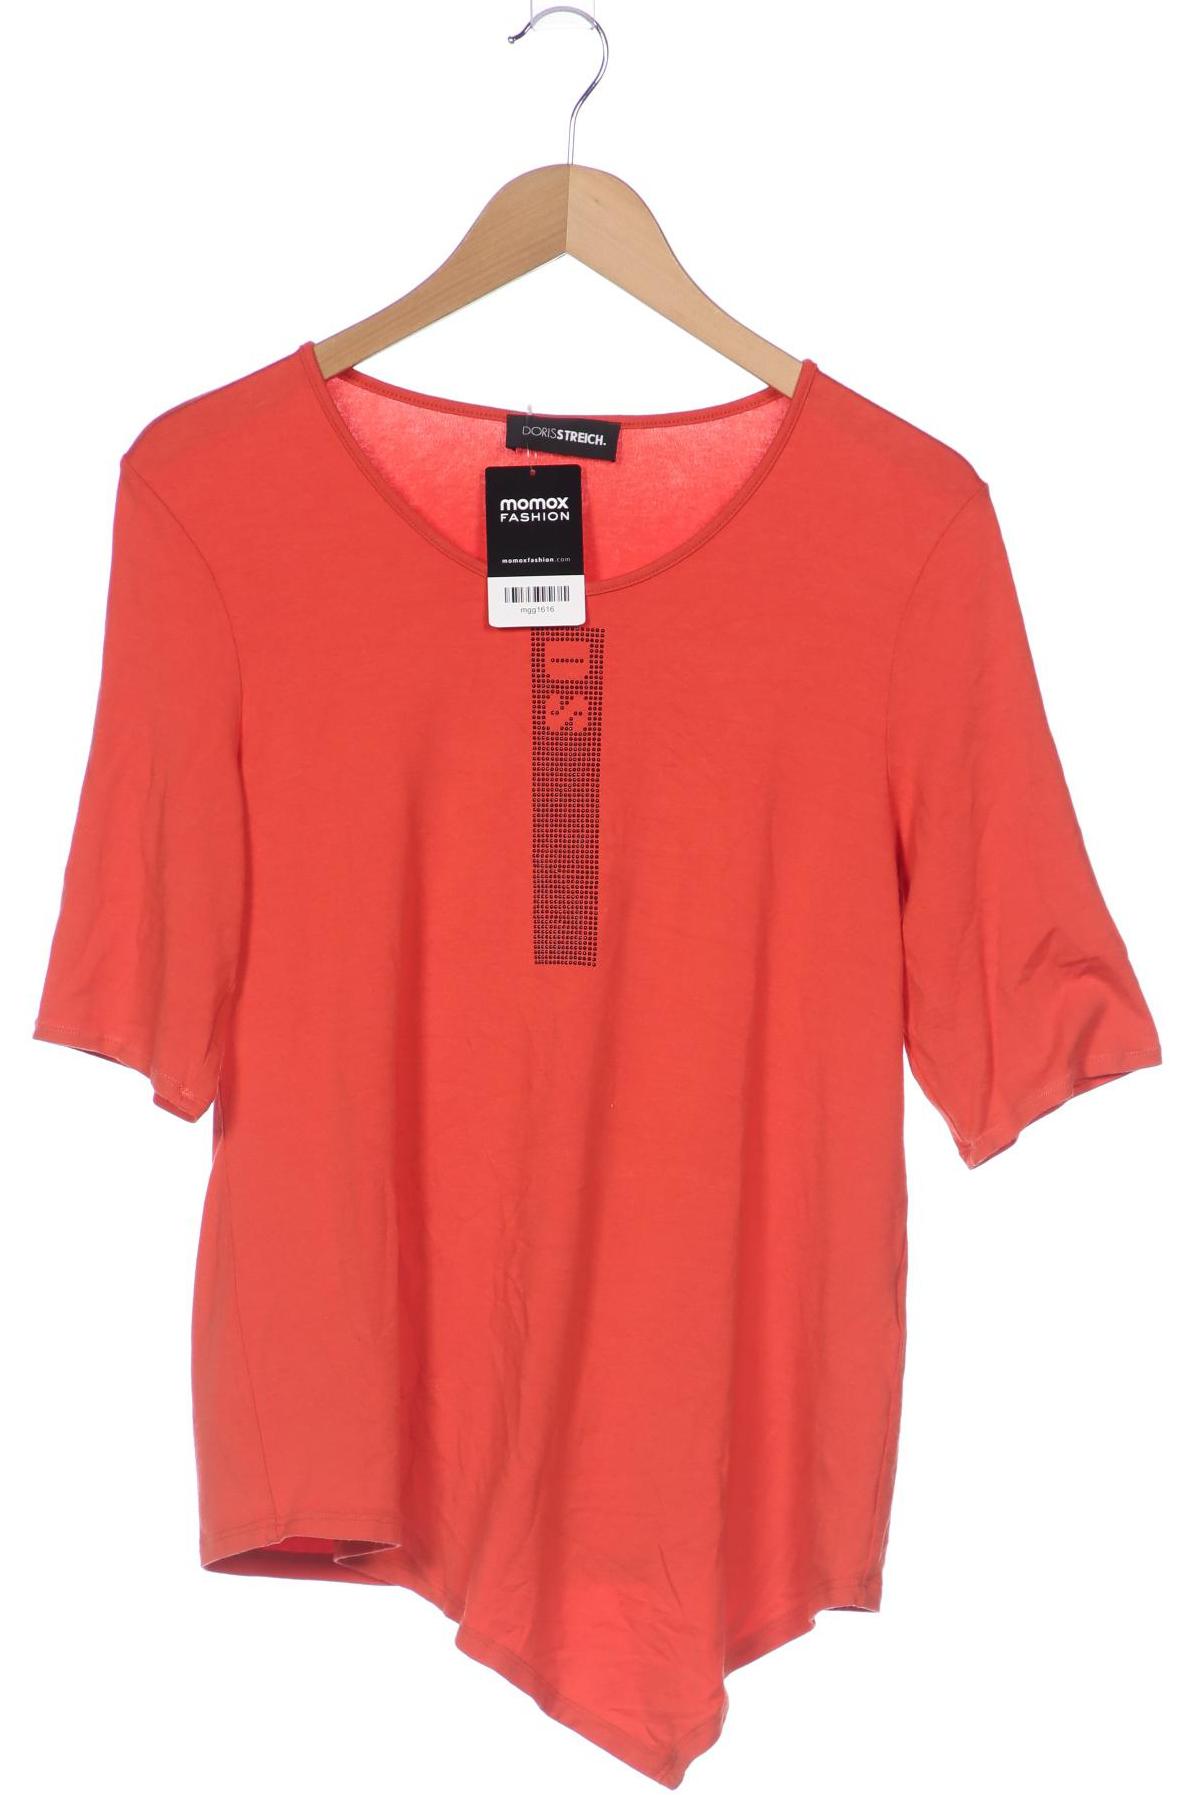 Doris Streich Damen T-Shirt, orange, Gr. 38 von Doris Streich